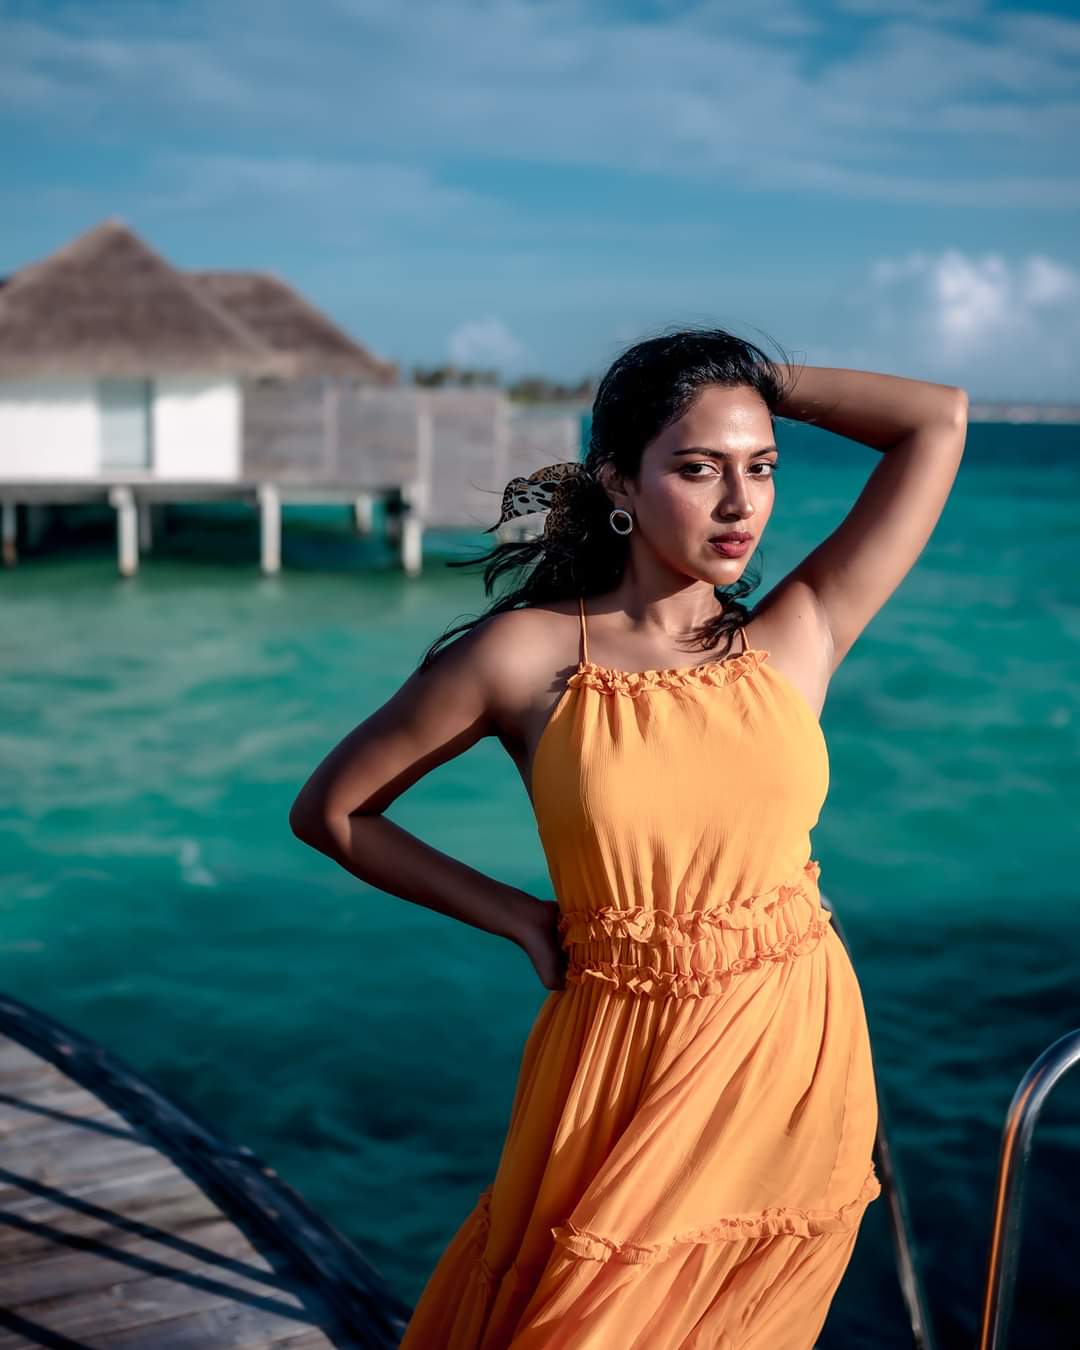 Amala Paul at Maldives Vacation Beach Photos went viral